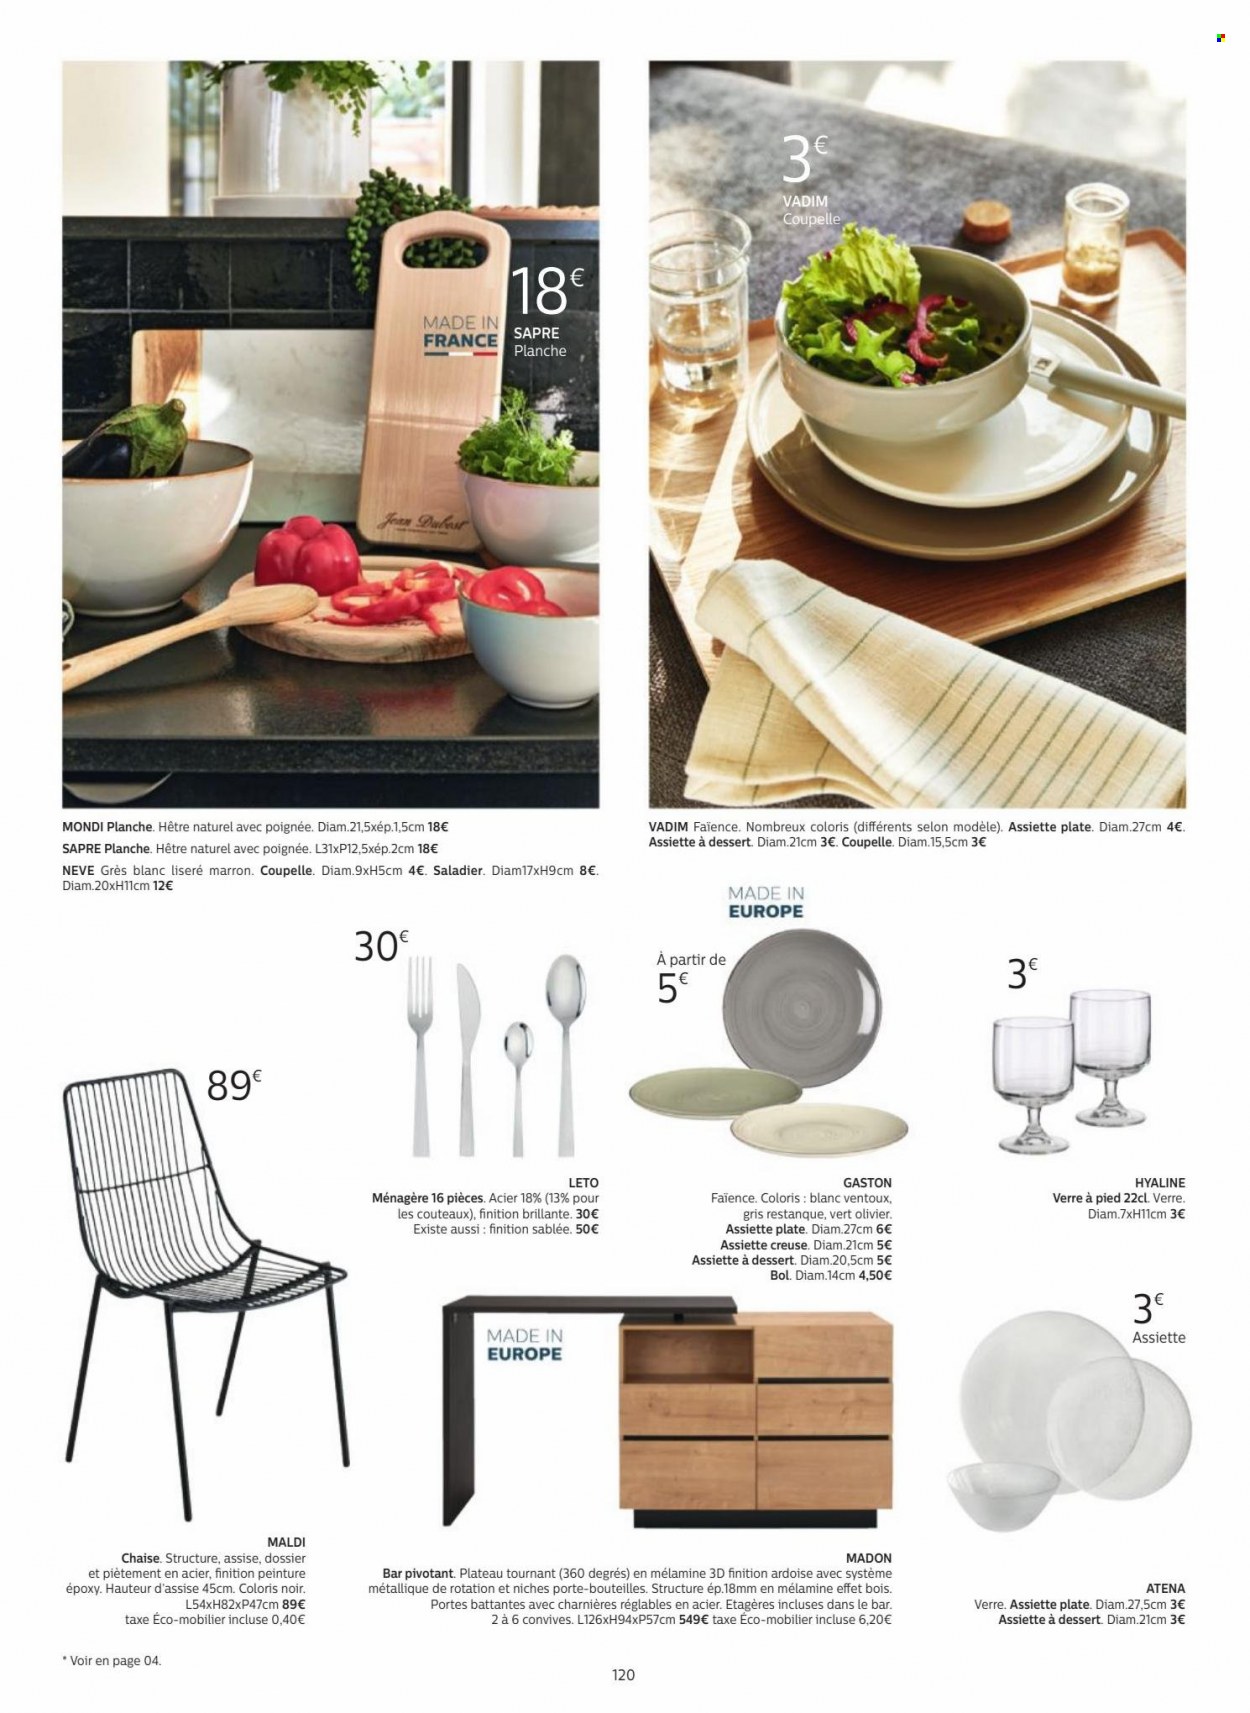 thumbnail - Catalogue alinea - Produits soldés - chaise, assiette, ménagère, saladier, verre, coupelle. Page 120.